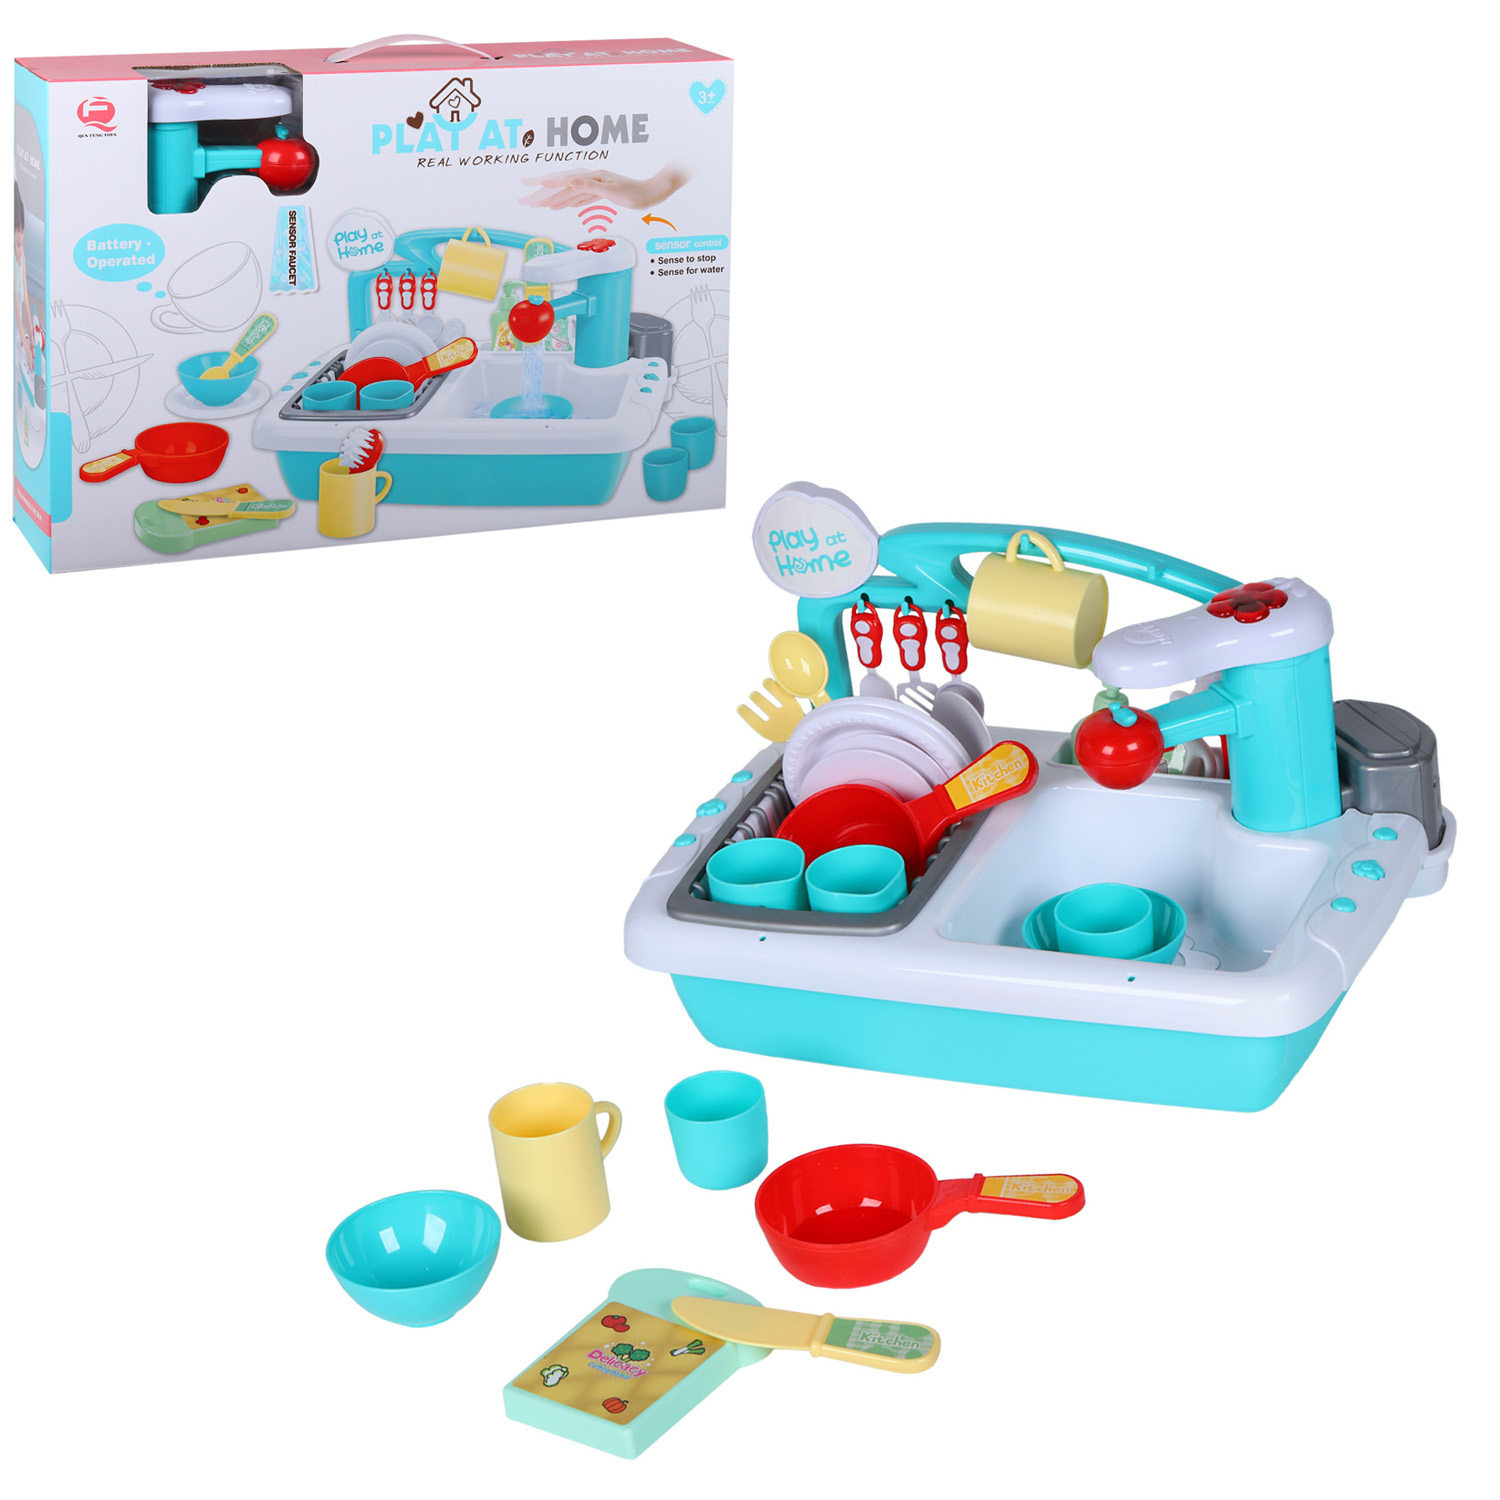 Детская кухня Qun Feng Toys раковина с водой, посуда, столовые приборы, голубой JB0209149